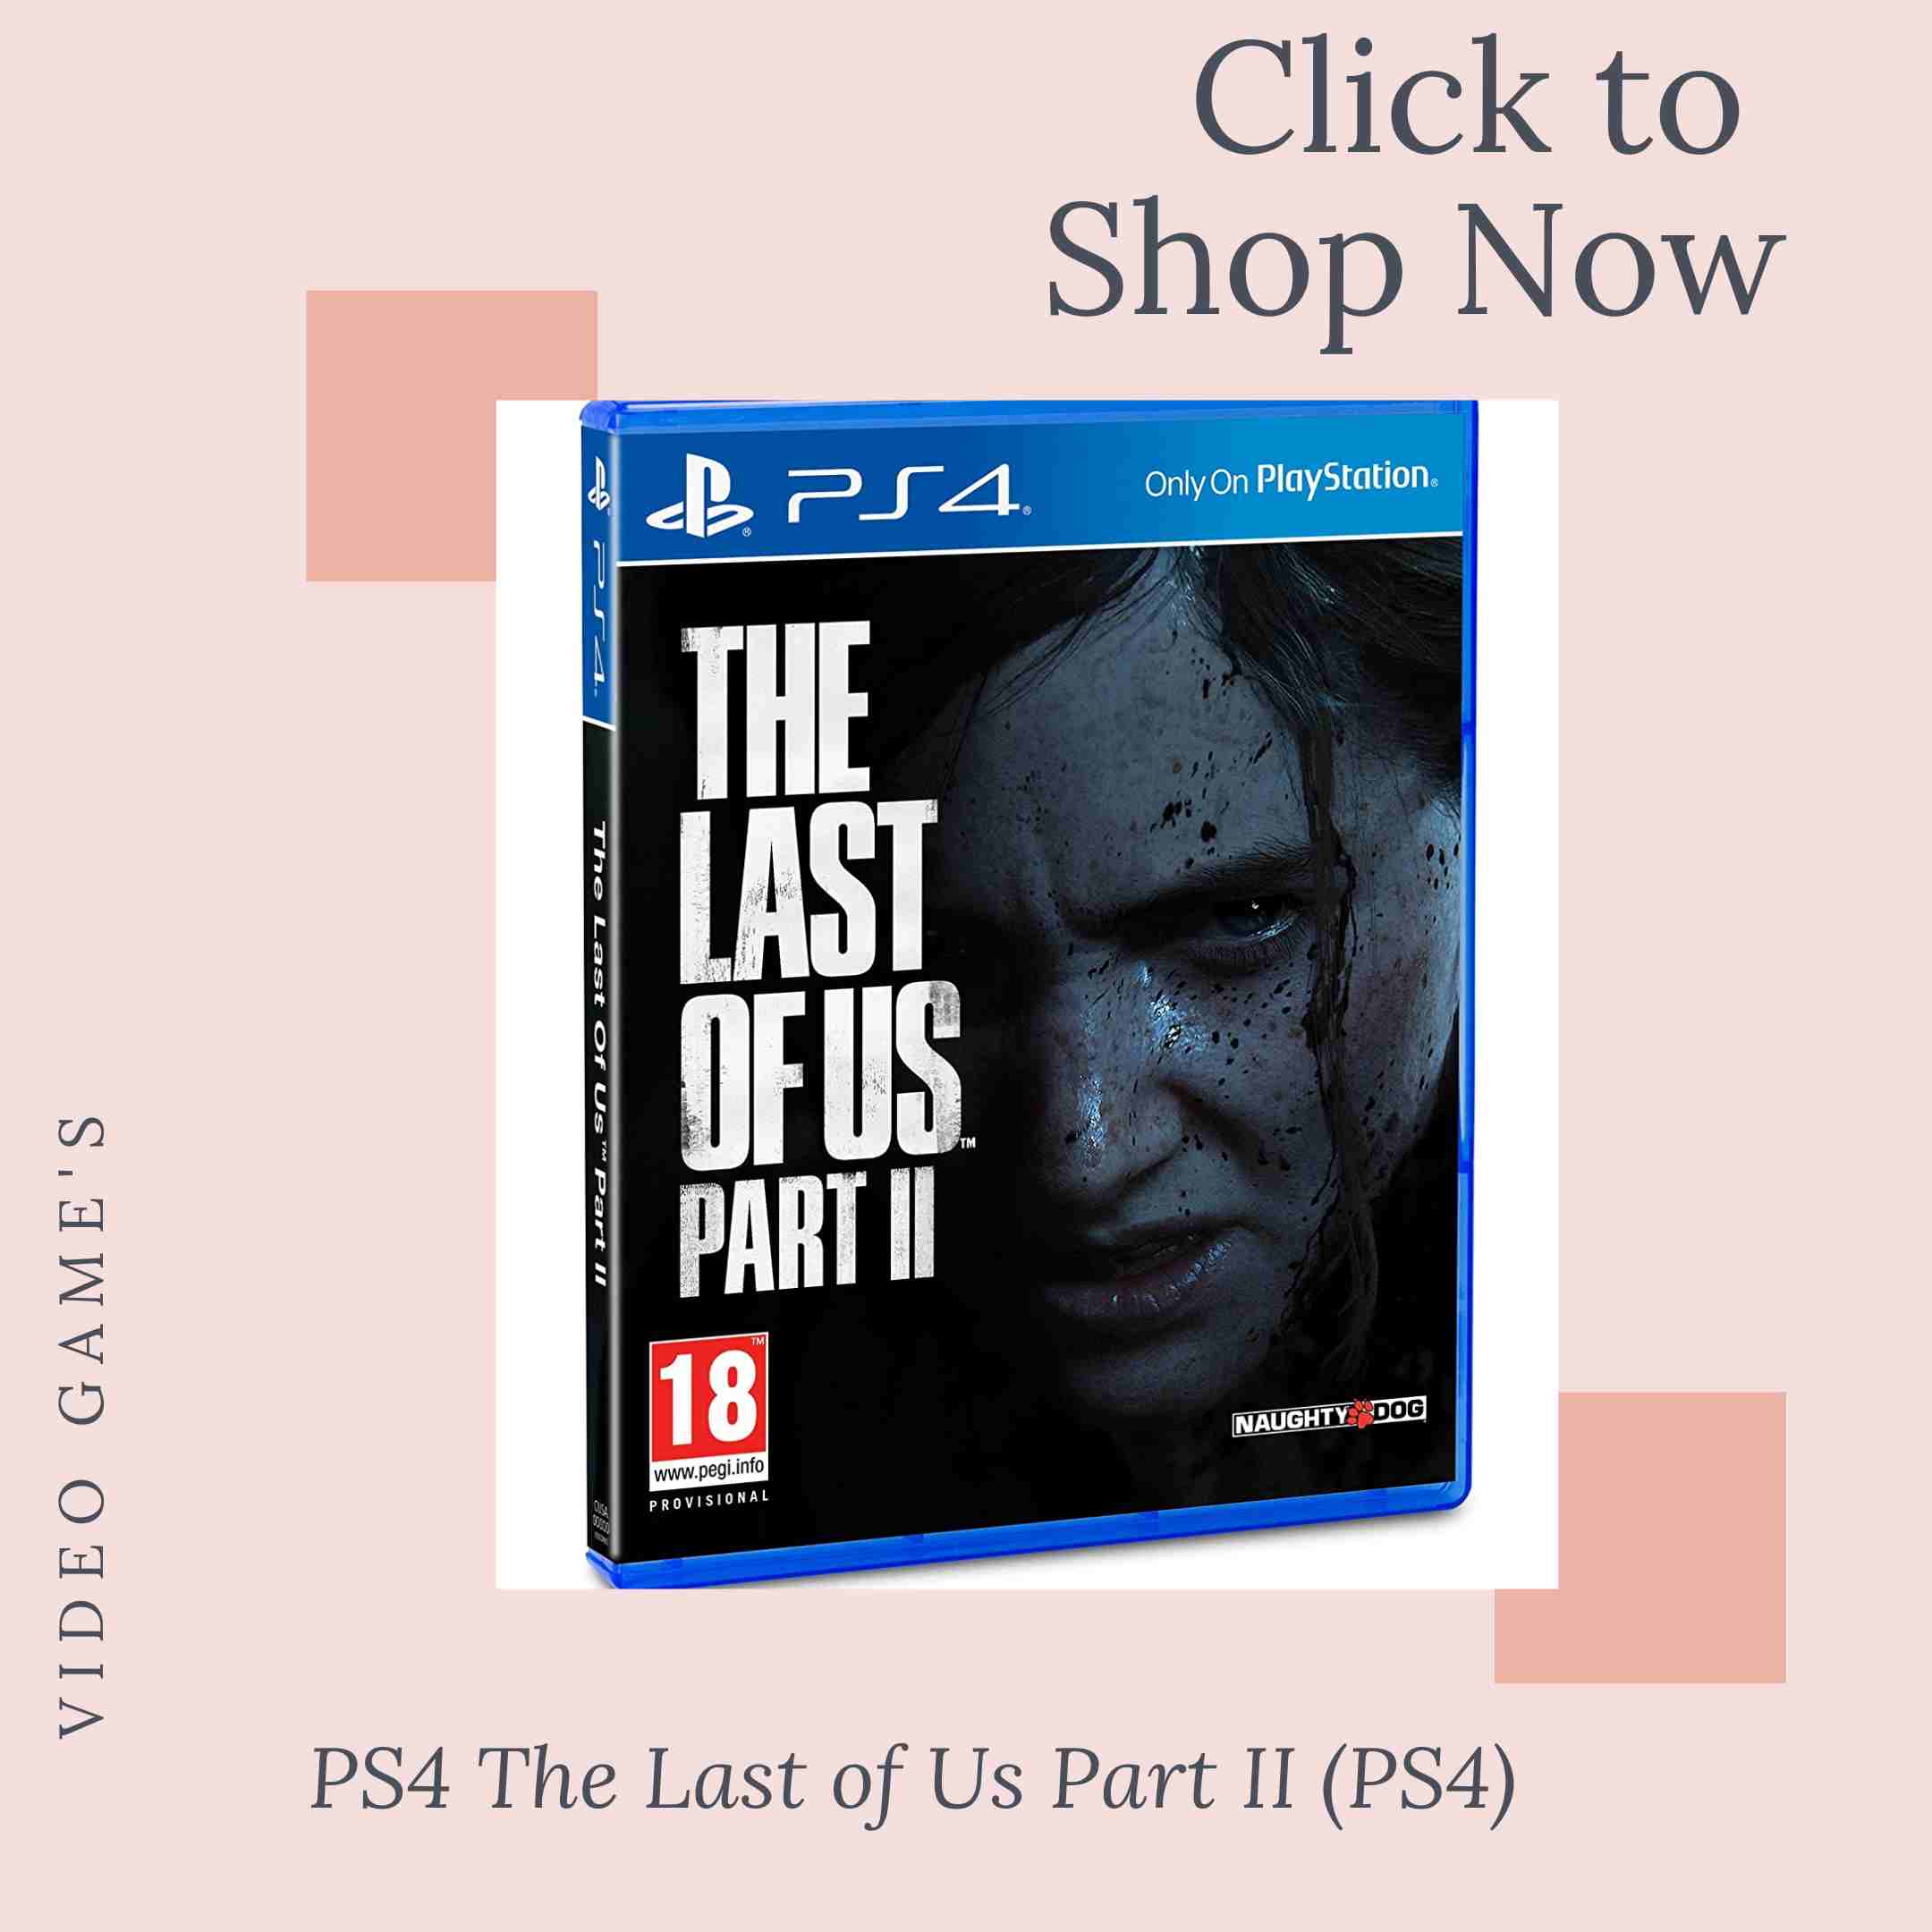 keshav - PS4 The Last of Us Part II